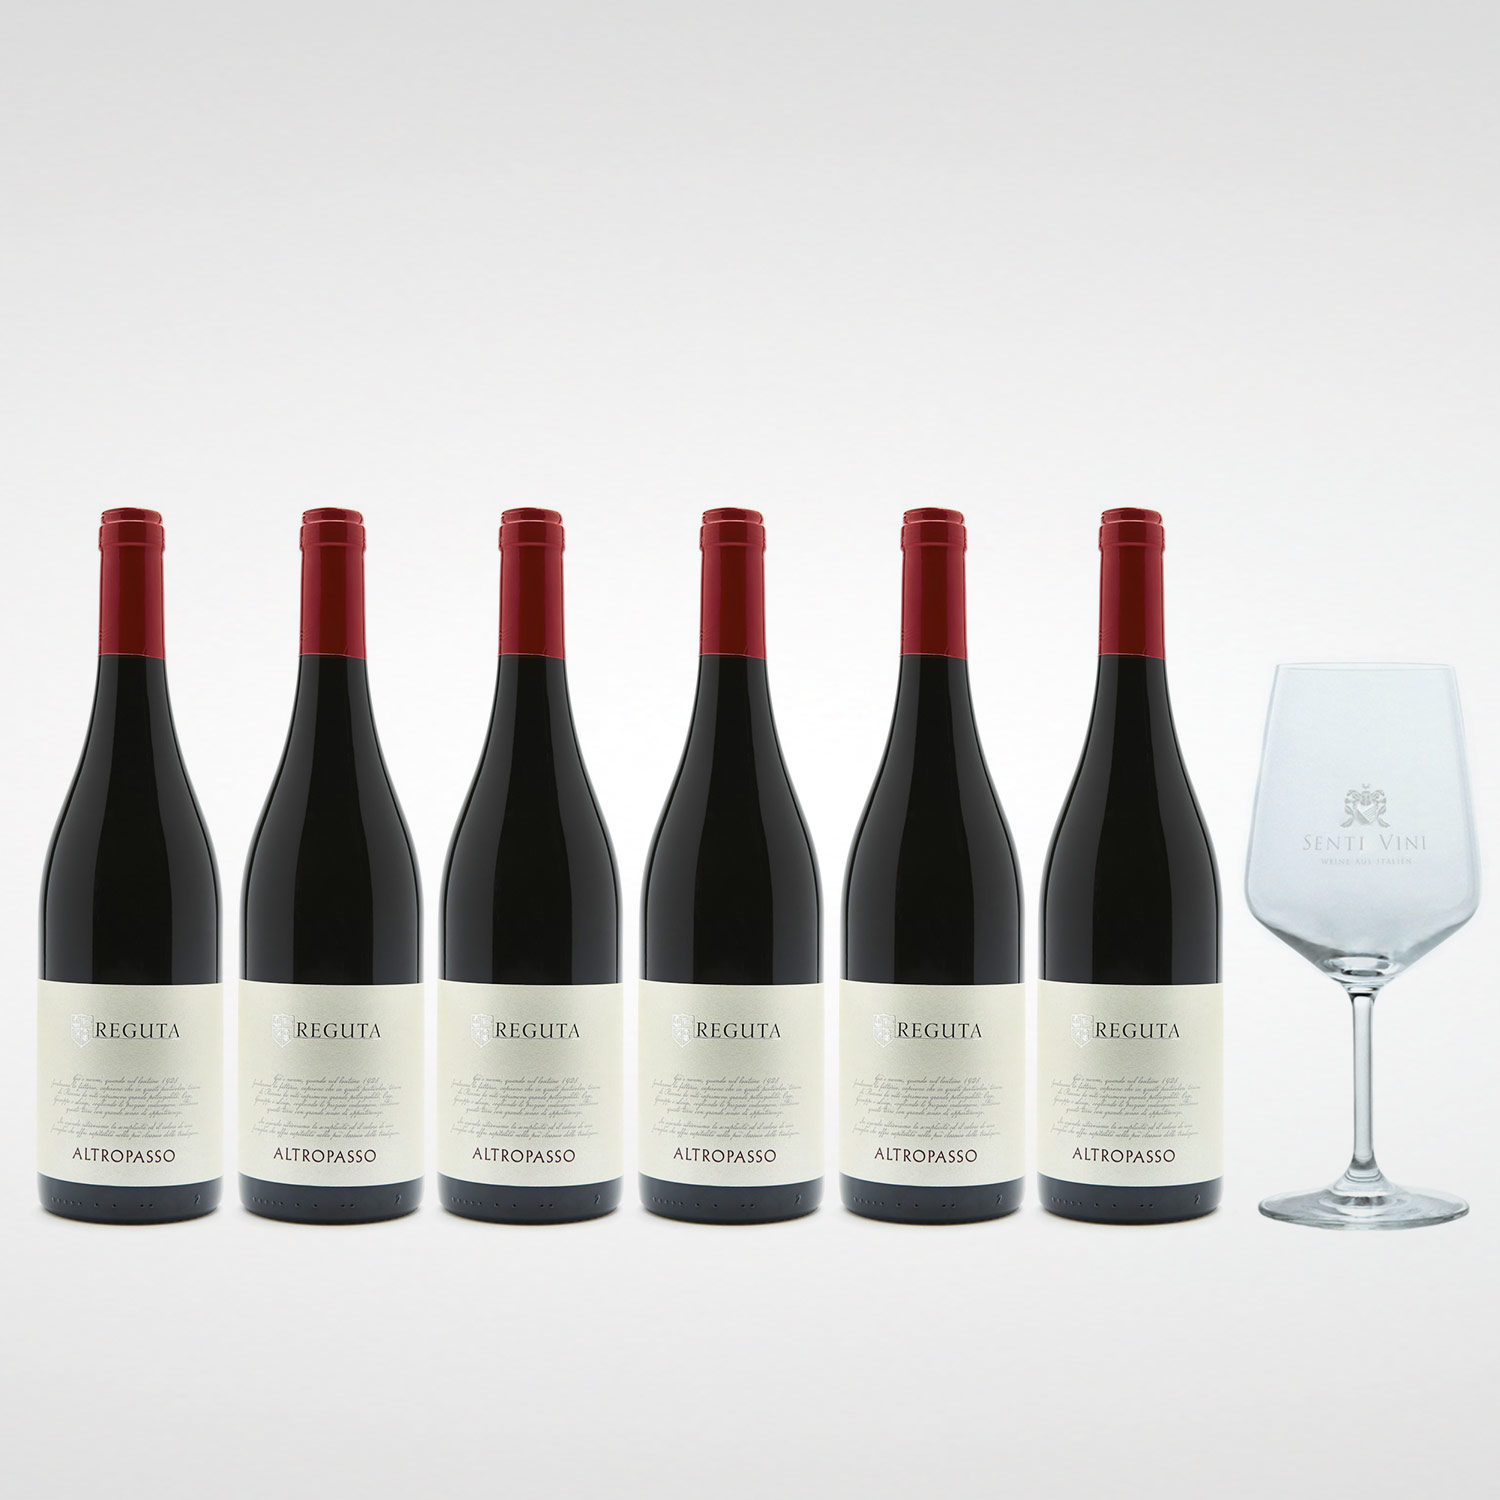 Sparpaket Reguta Giuseppe e Luigi Altropasso Rosso delle Venezie IGP 2020  (6 x 0,75l) mit Spiegelau Senti Vini Weinglas | Online kaufen bei Senti  Vini - Weine aus Italien